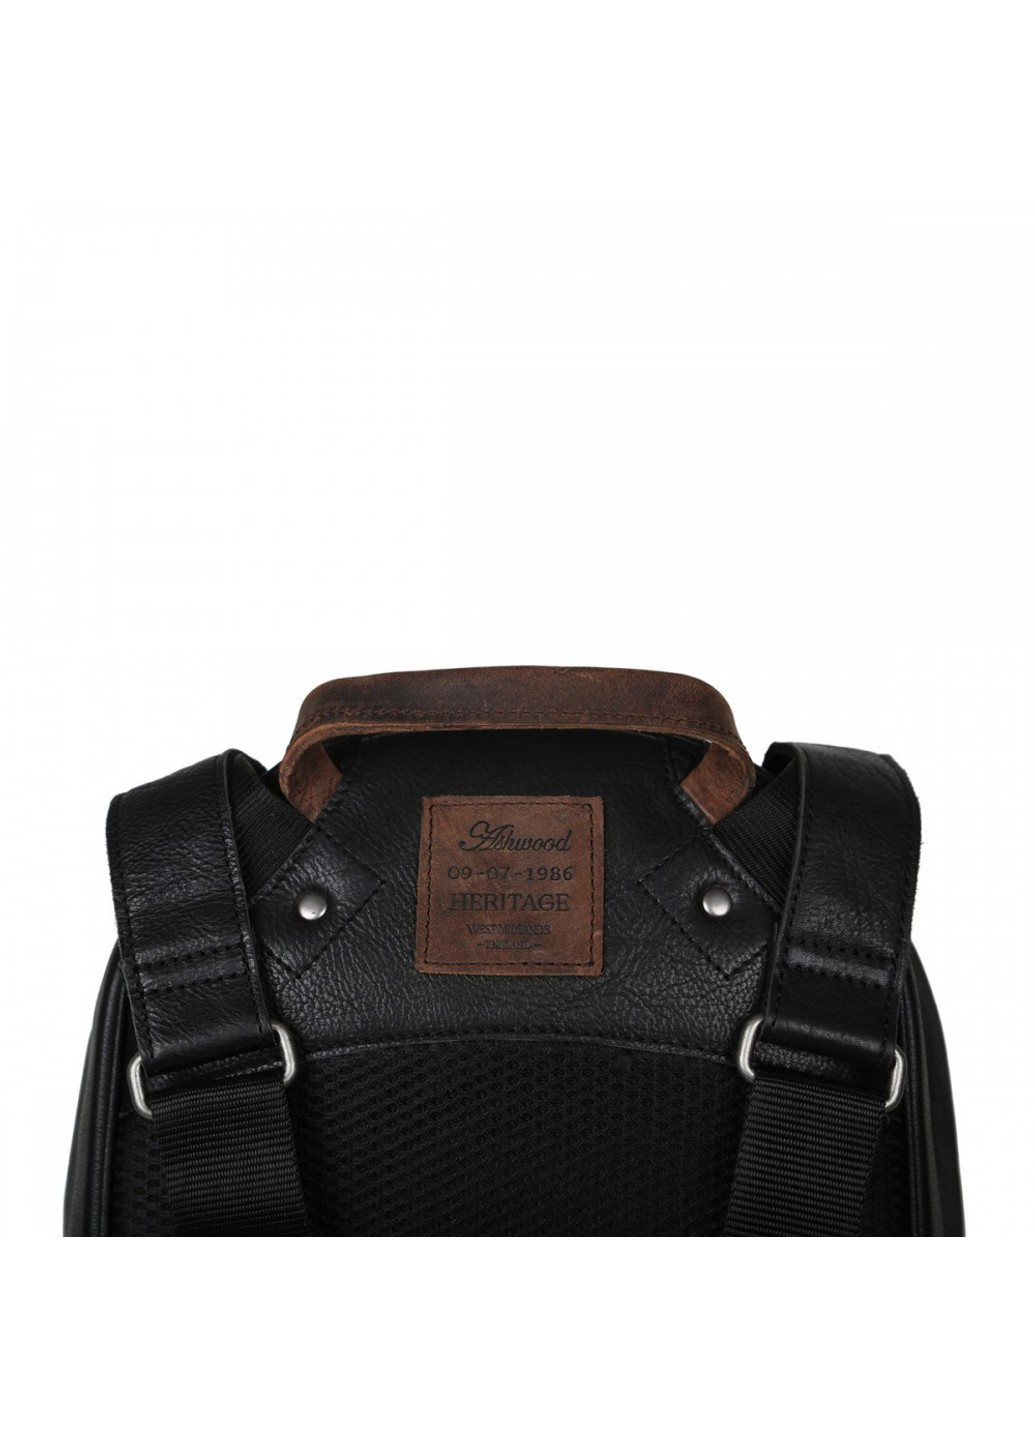 Мужской кожаный рюкзак 4555 Black Ashwood (261856440)